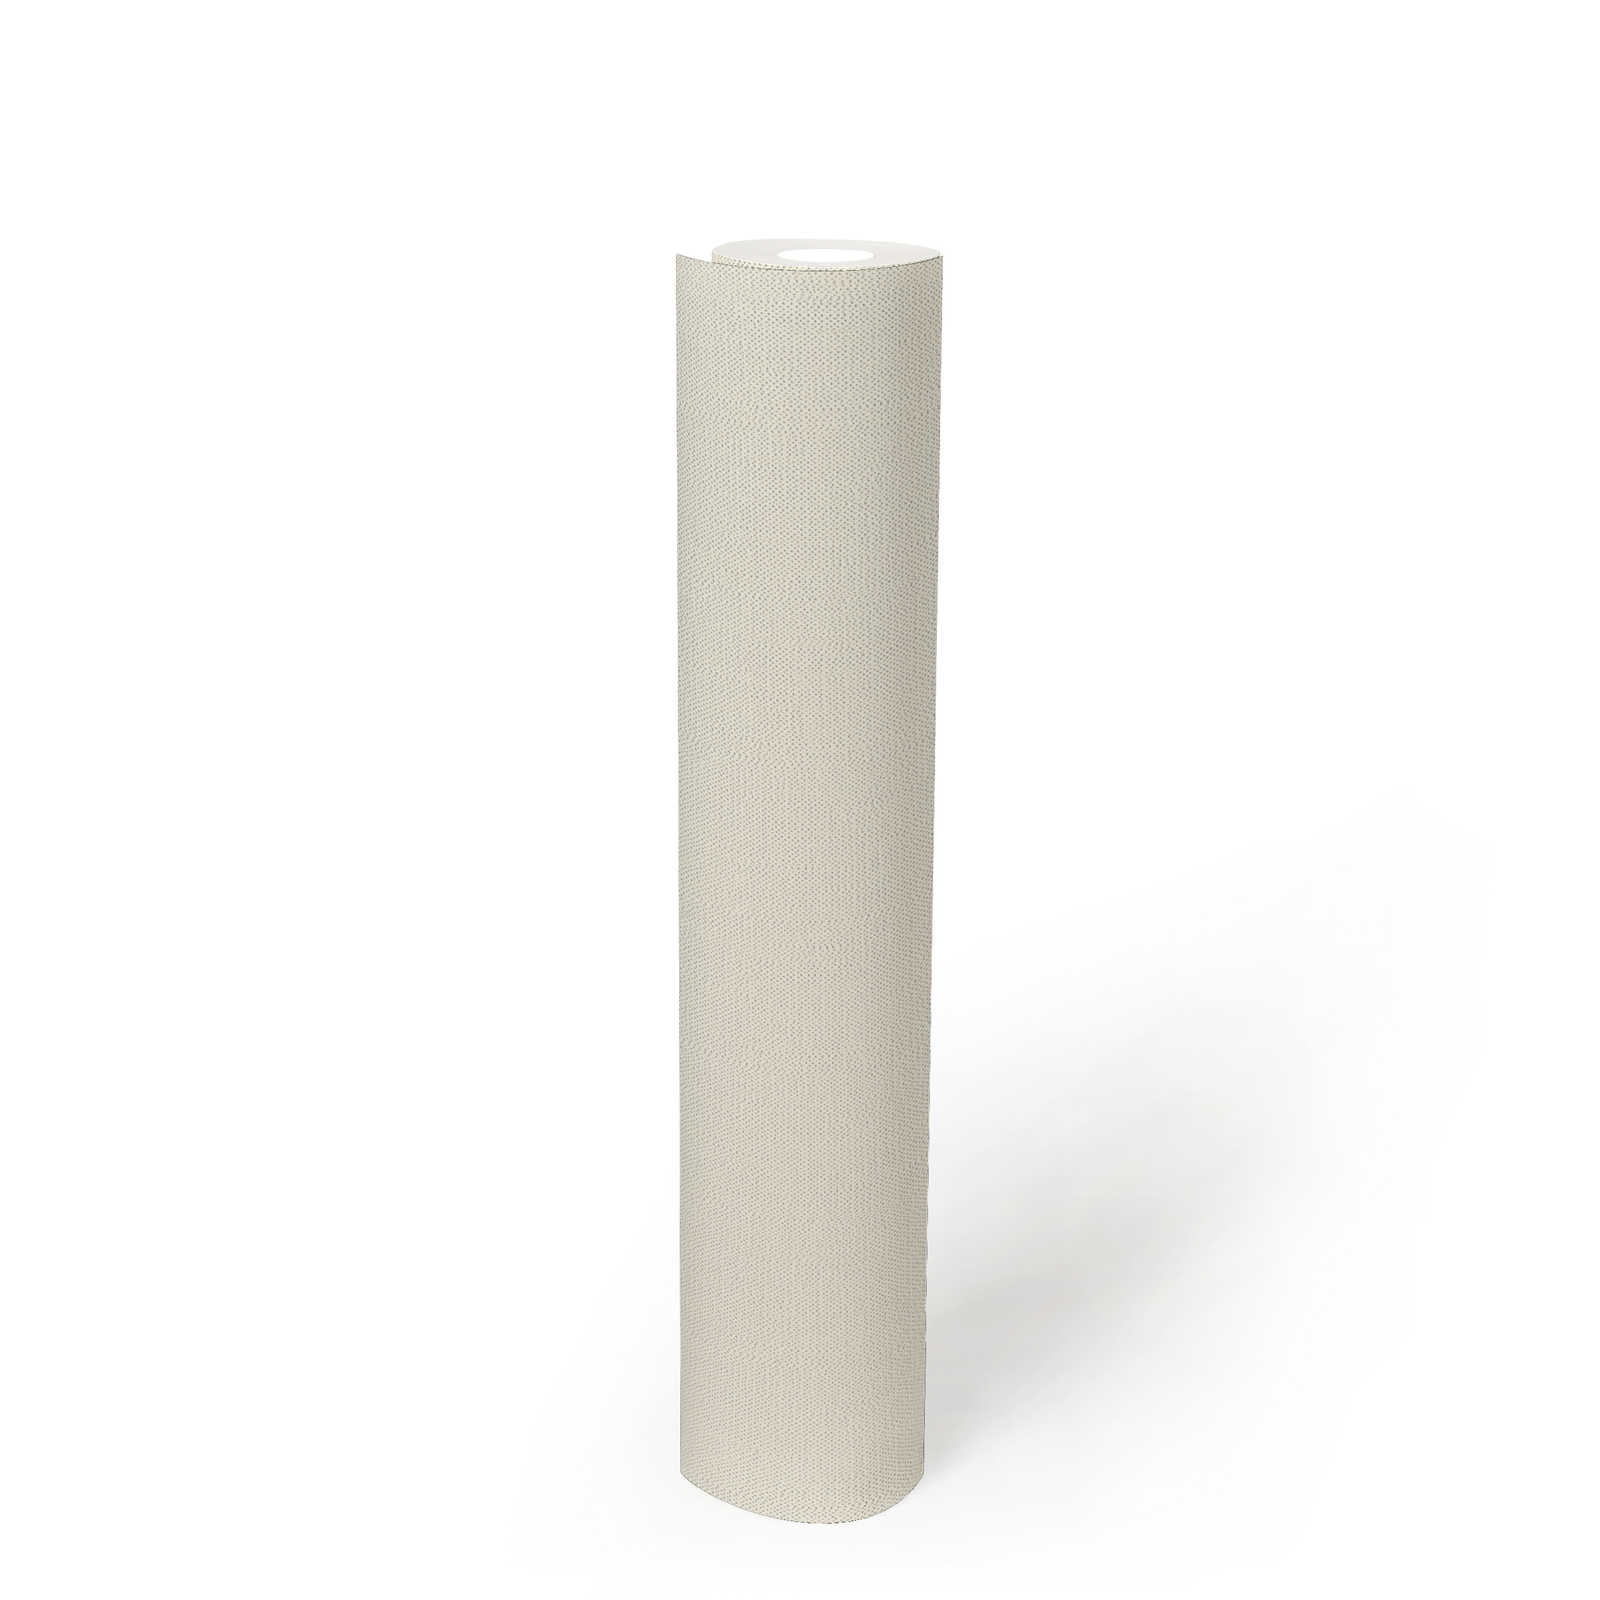             Non-woven wallpaper white monochrome matt with foam structure
        